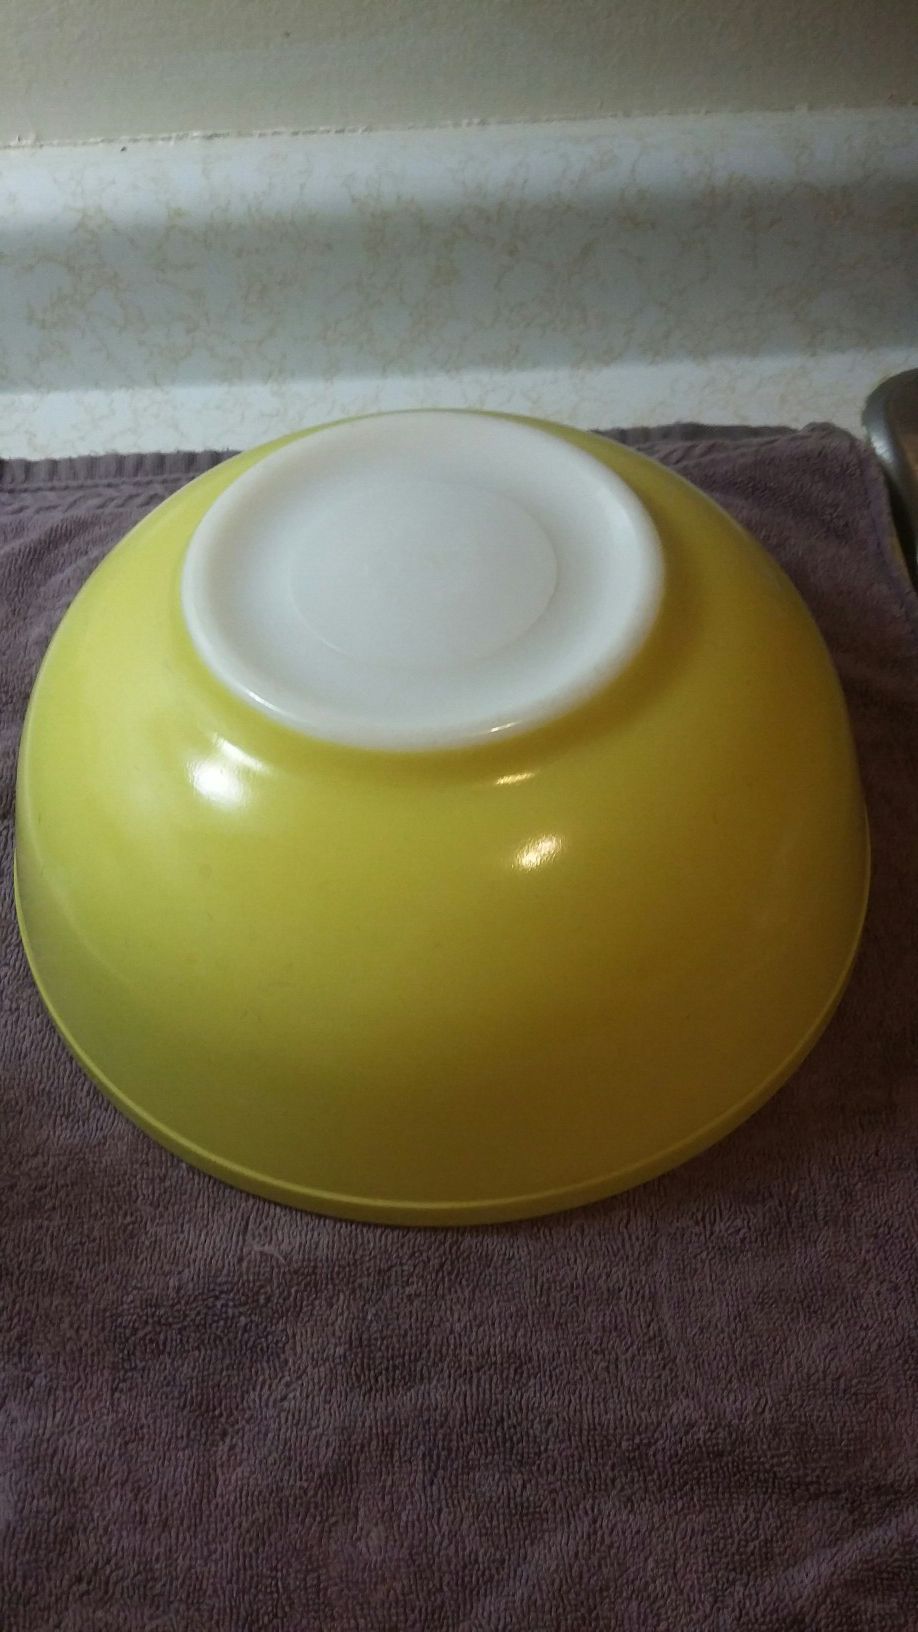 Pyrex Large yellow mixing bowl